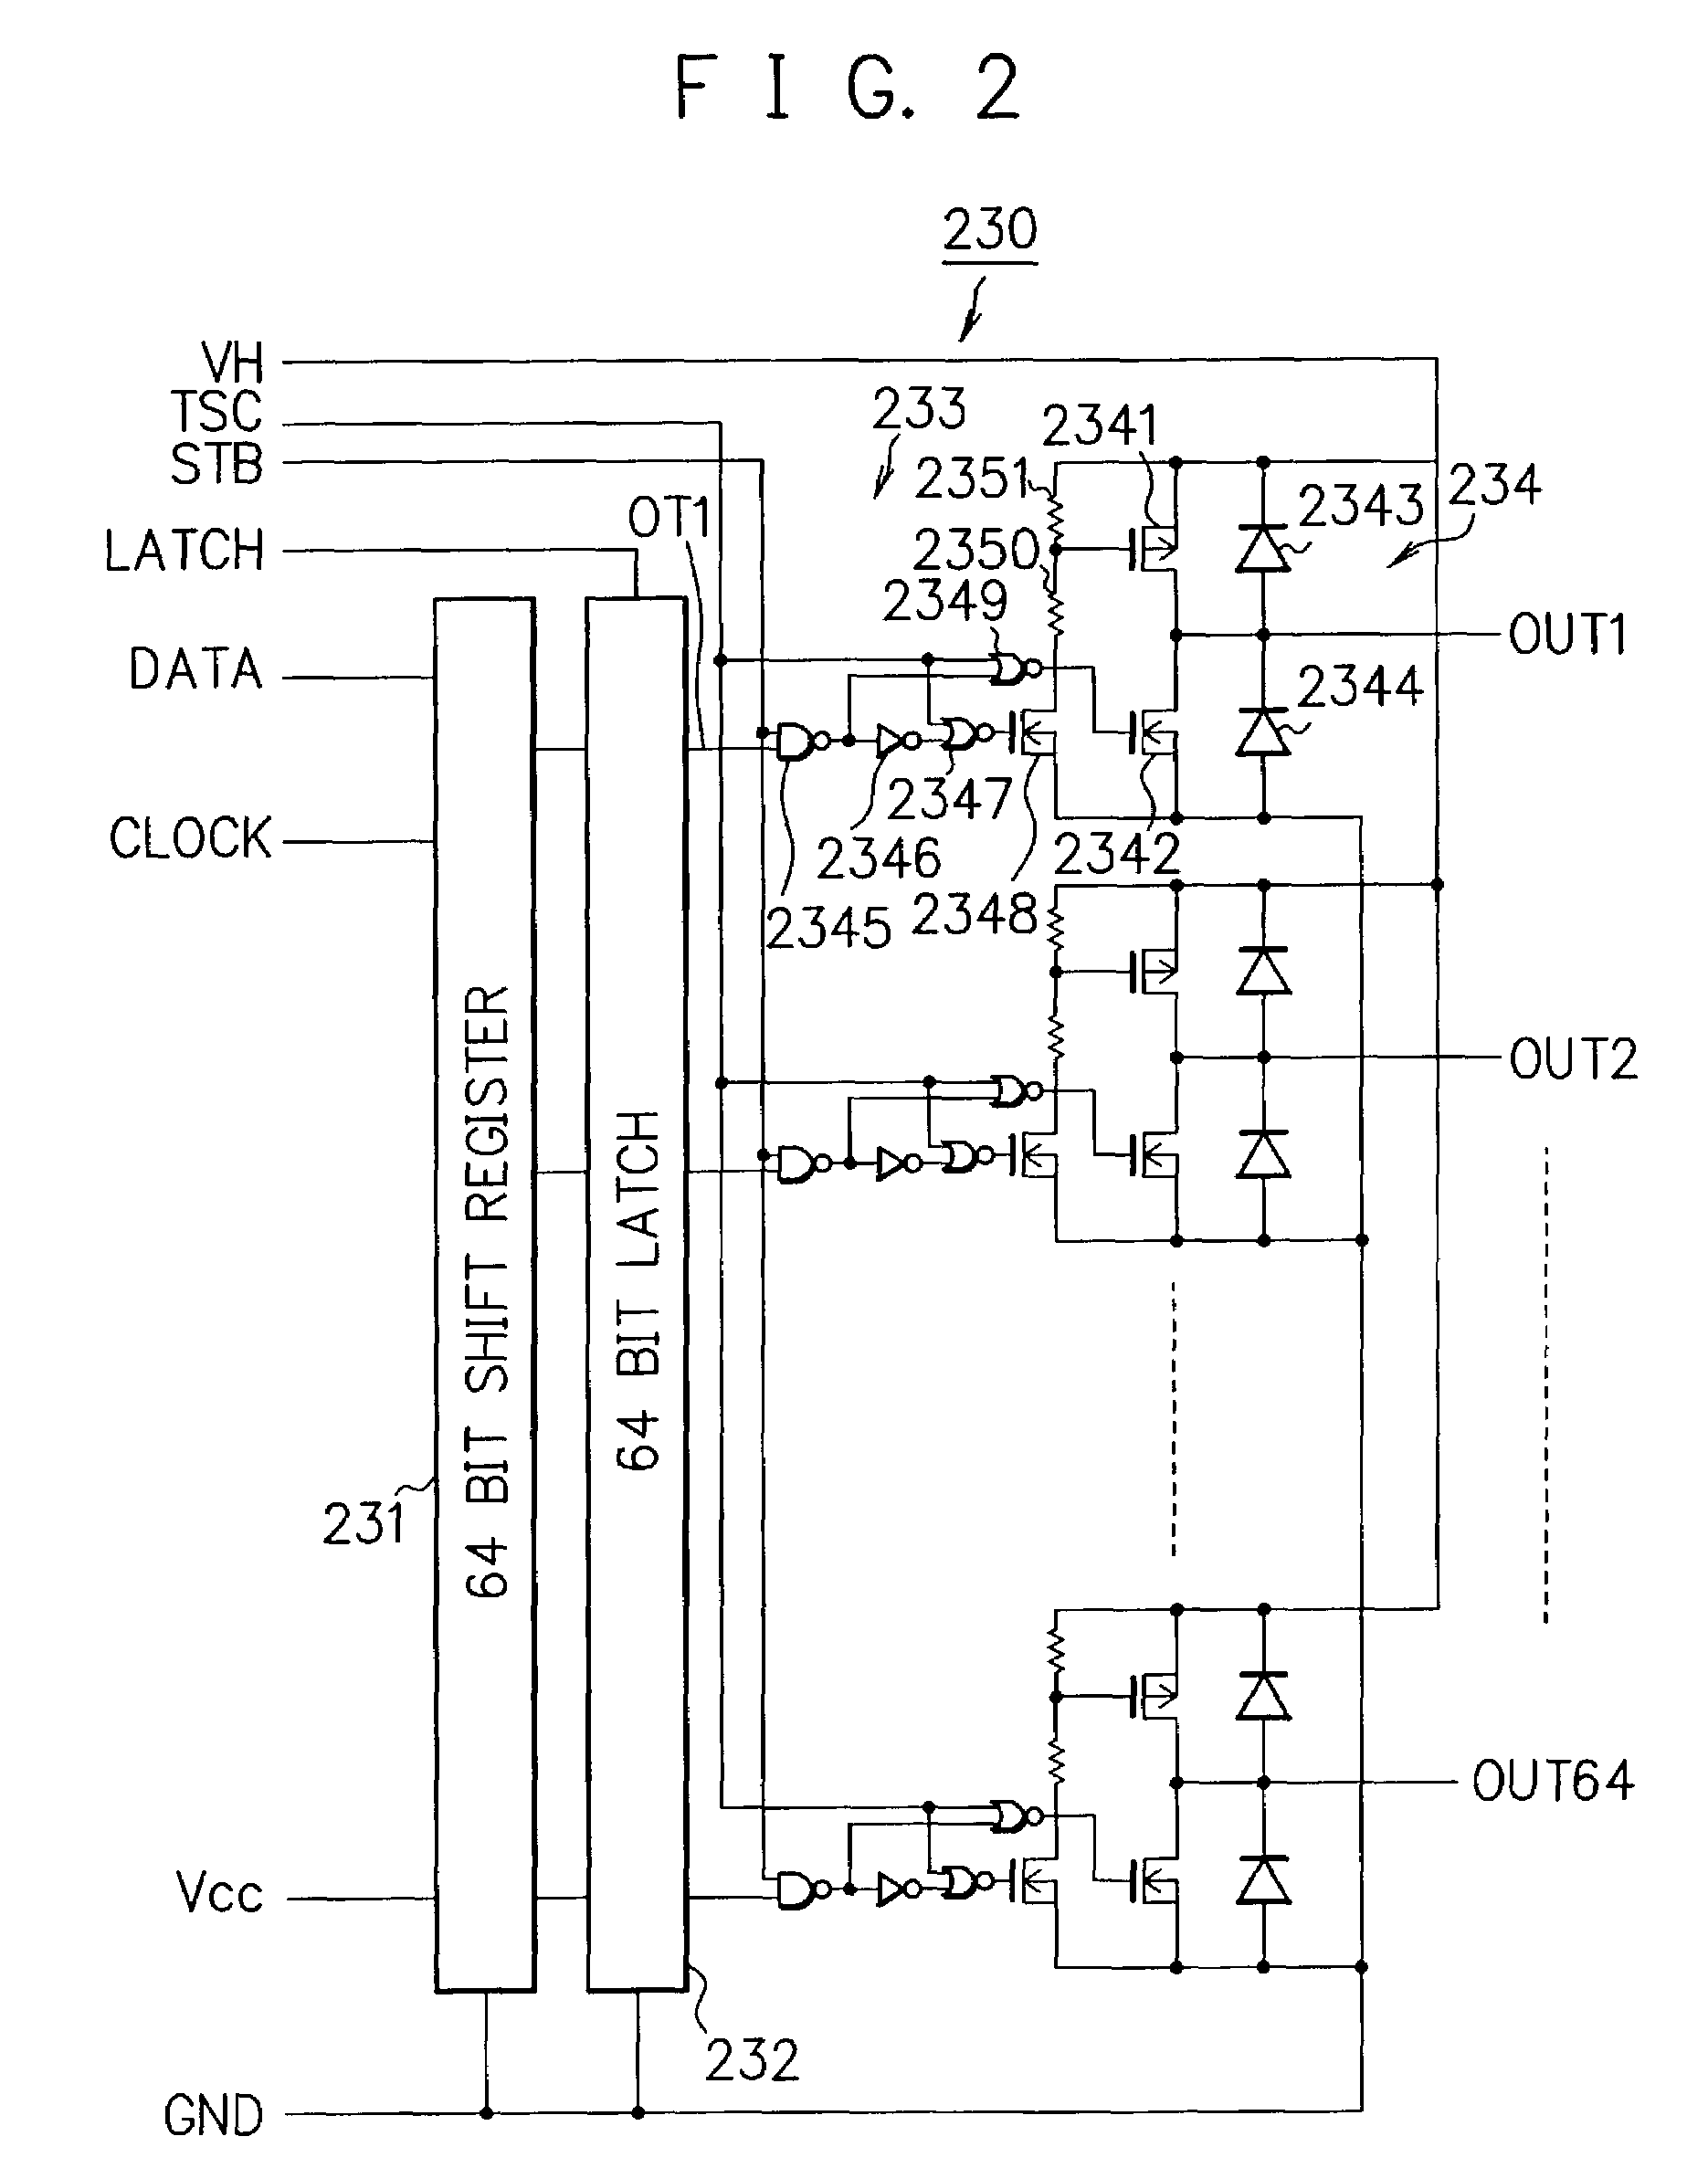 Display panel drive circuit and plasma display